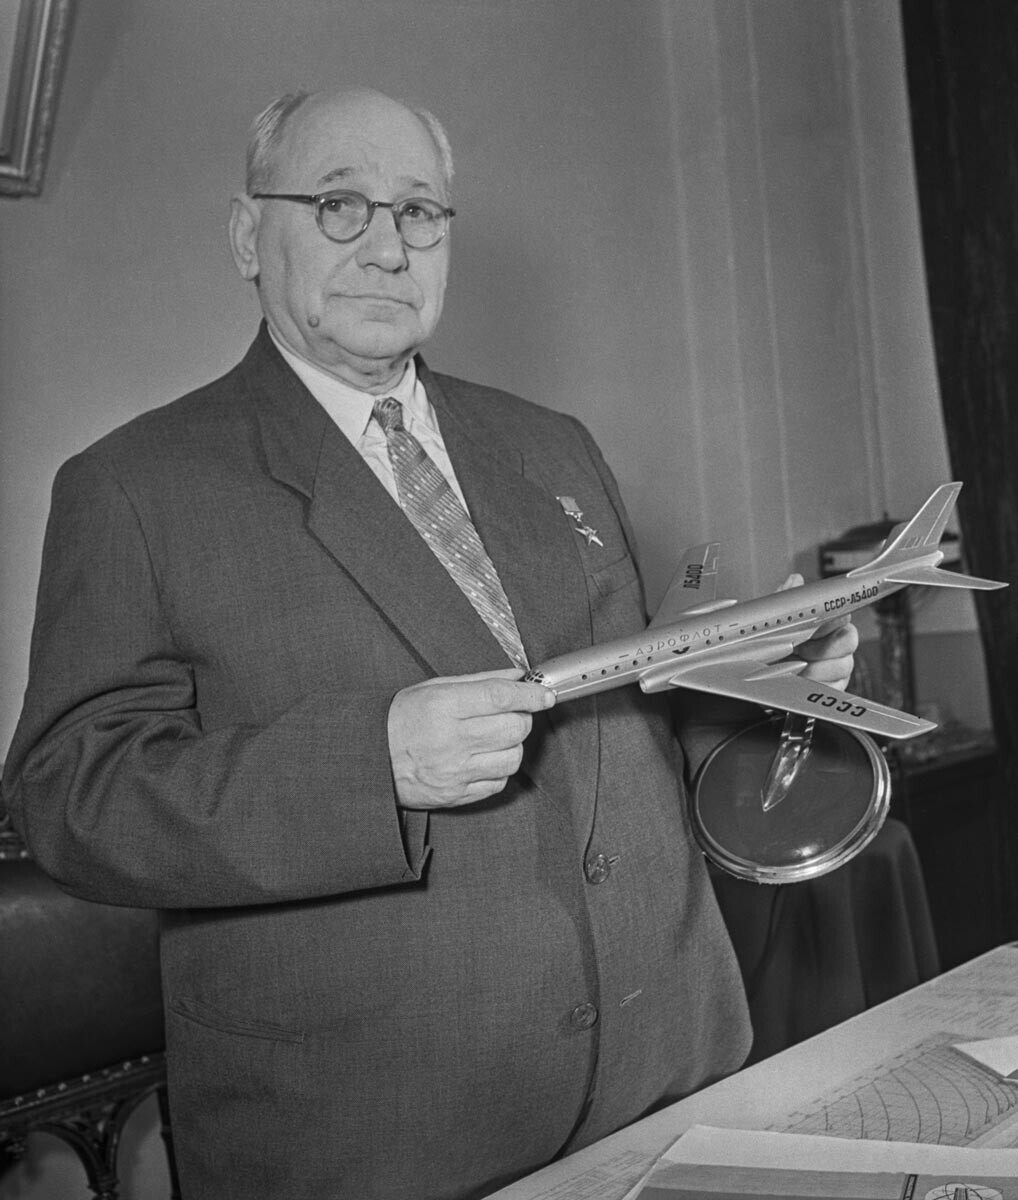 ZSSR. Moskva. 1957. Redni član Akademije znanosti ZSSR, konstruktor letal Andrej Tupoljev v svoji pisarni.
